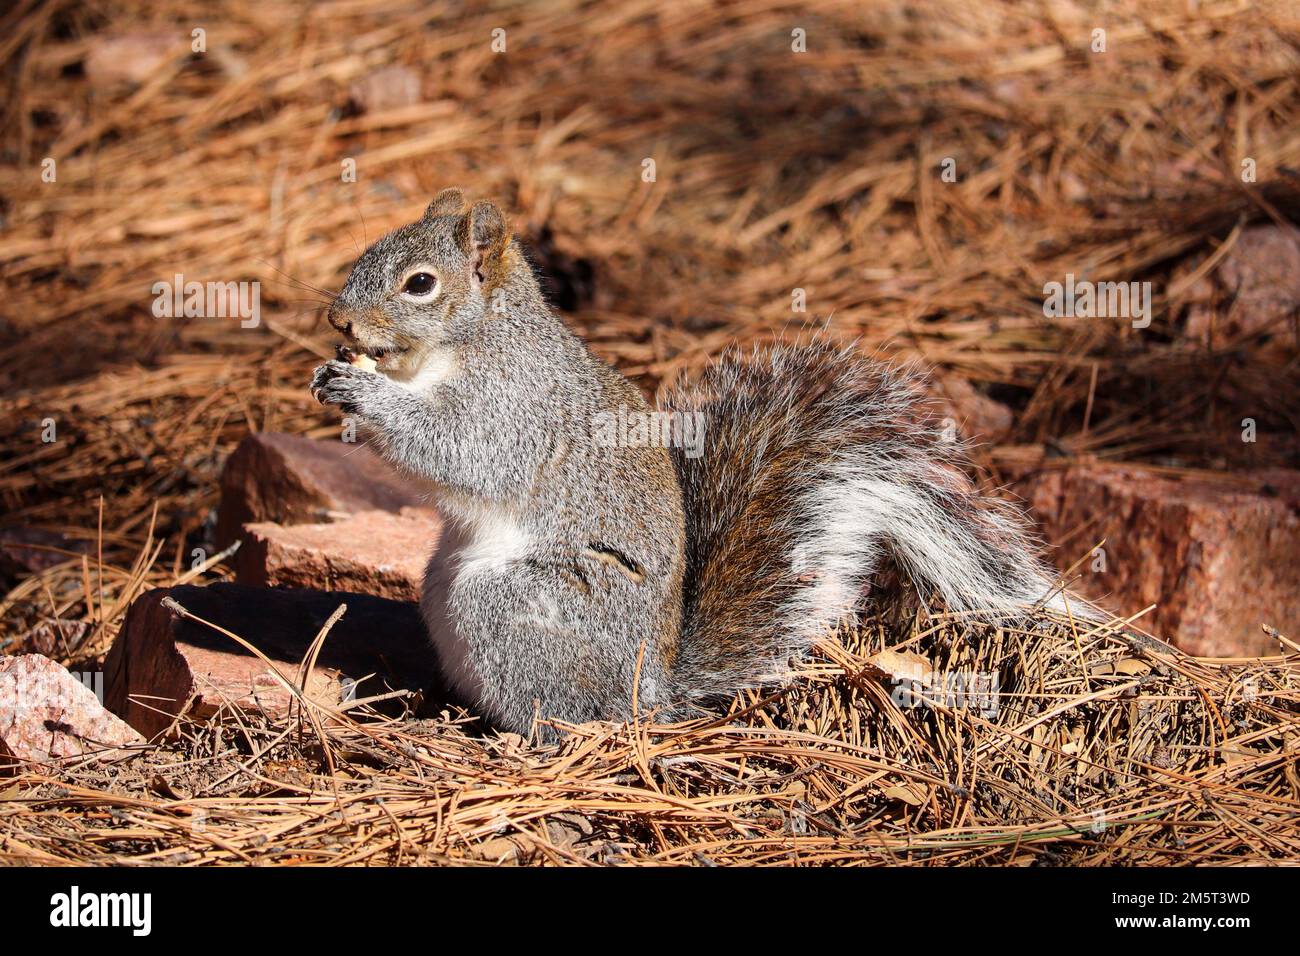 Arizona gray squirrel or Sciurus arizonensis feeding on the ground at Rumsey Park in Payson, Arizona. Stock Photo